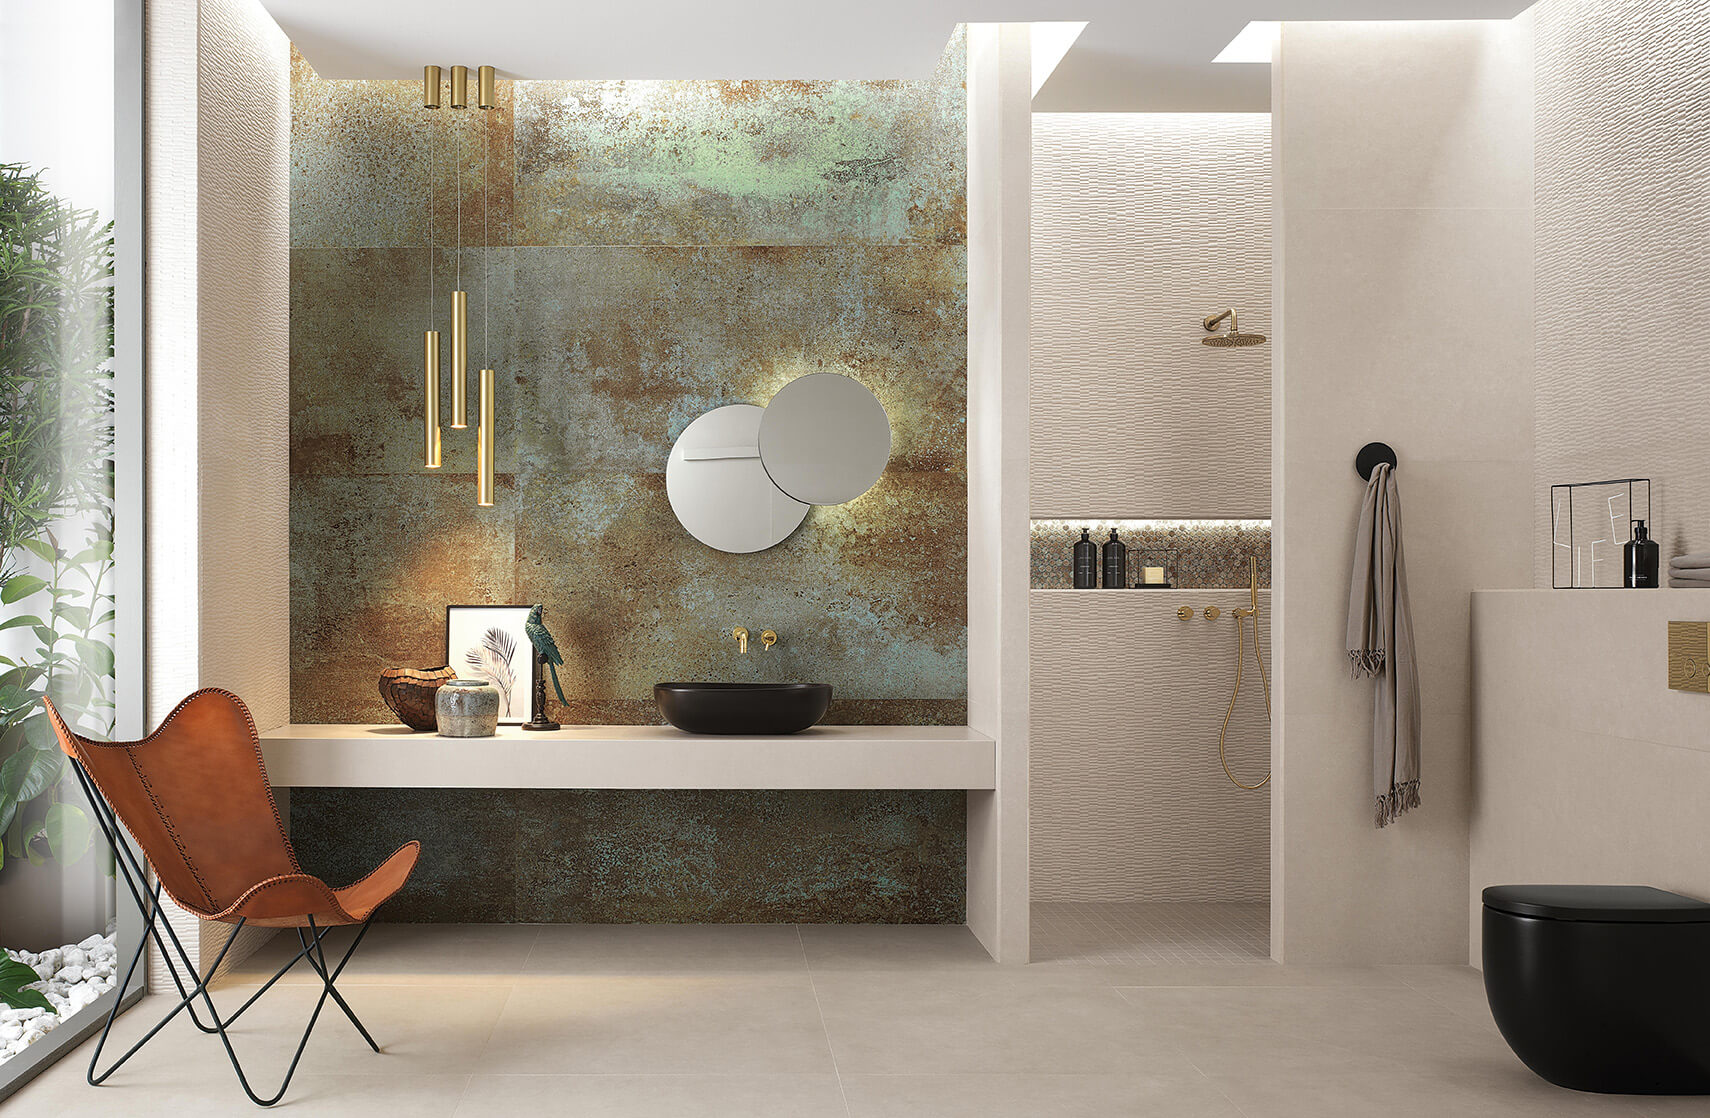 Piastrelle XL, non solo gres: la nuova ceramica grande formato -  Besidebathrooms